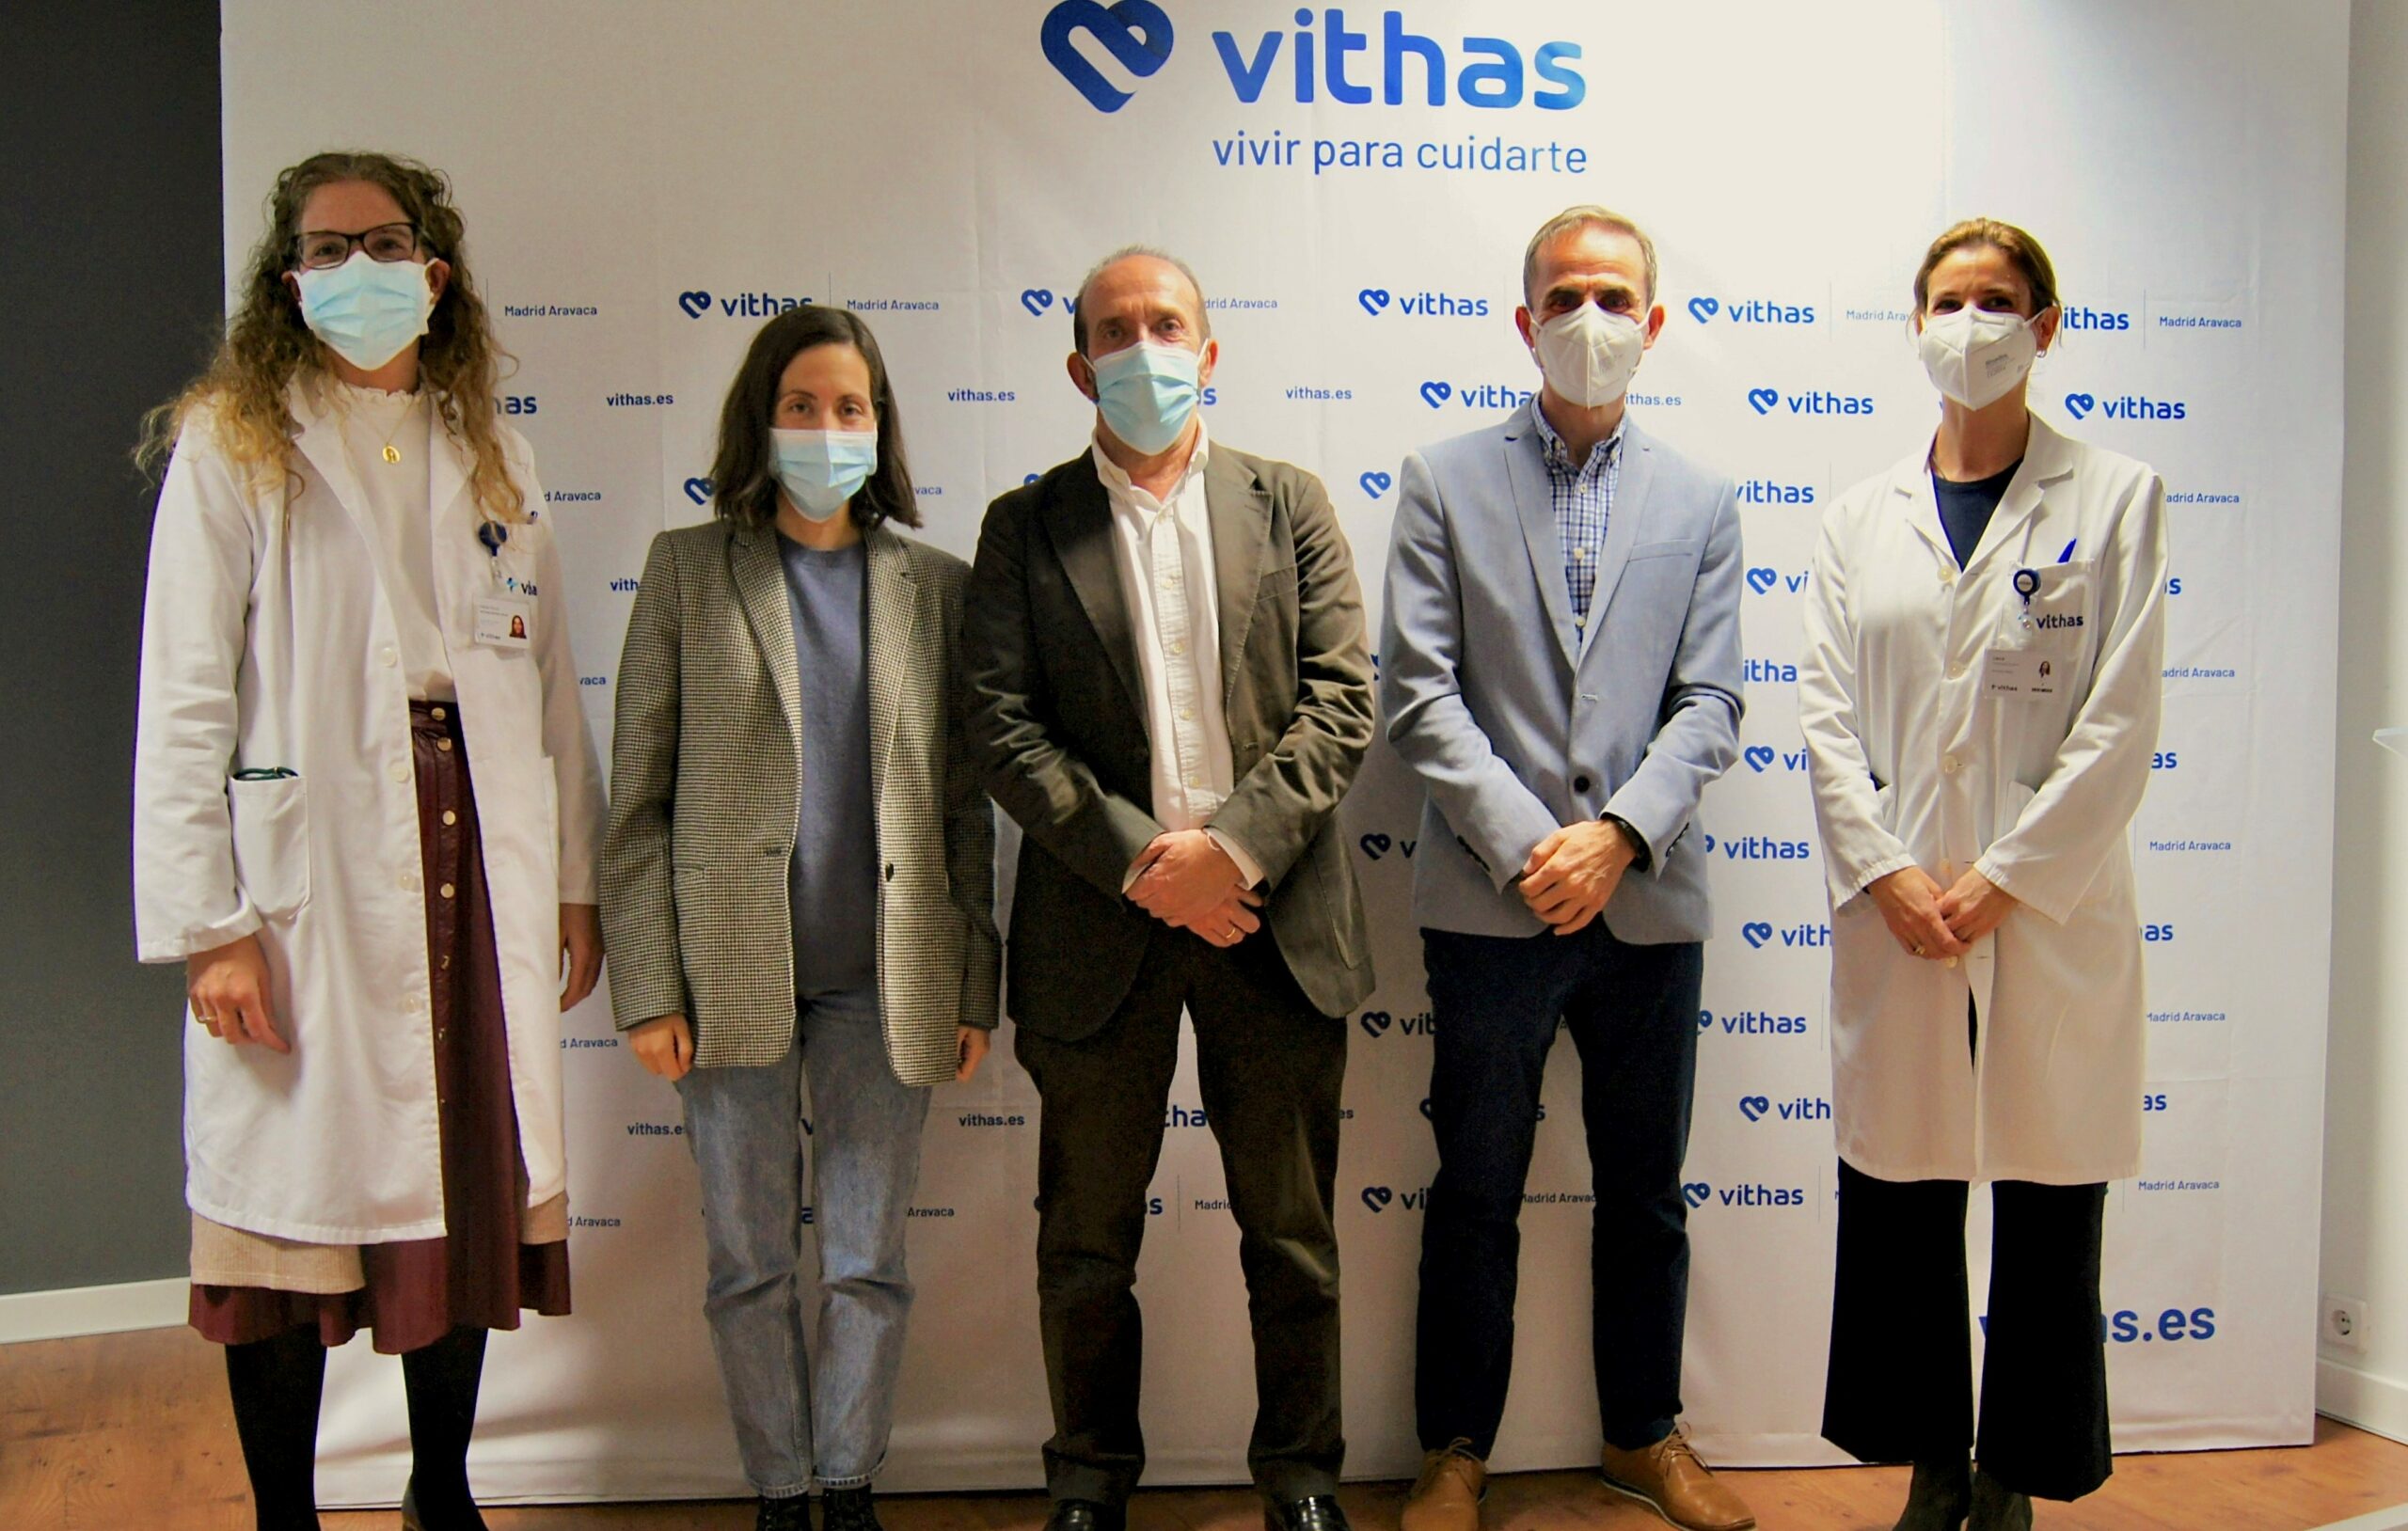 Vithas Madrid Aravaca celebra una jornada de actualización en covid-19